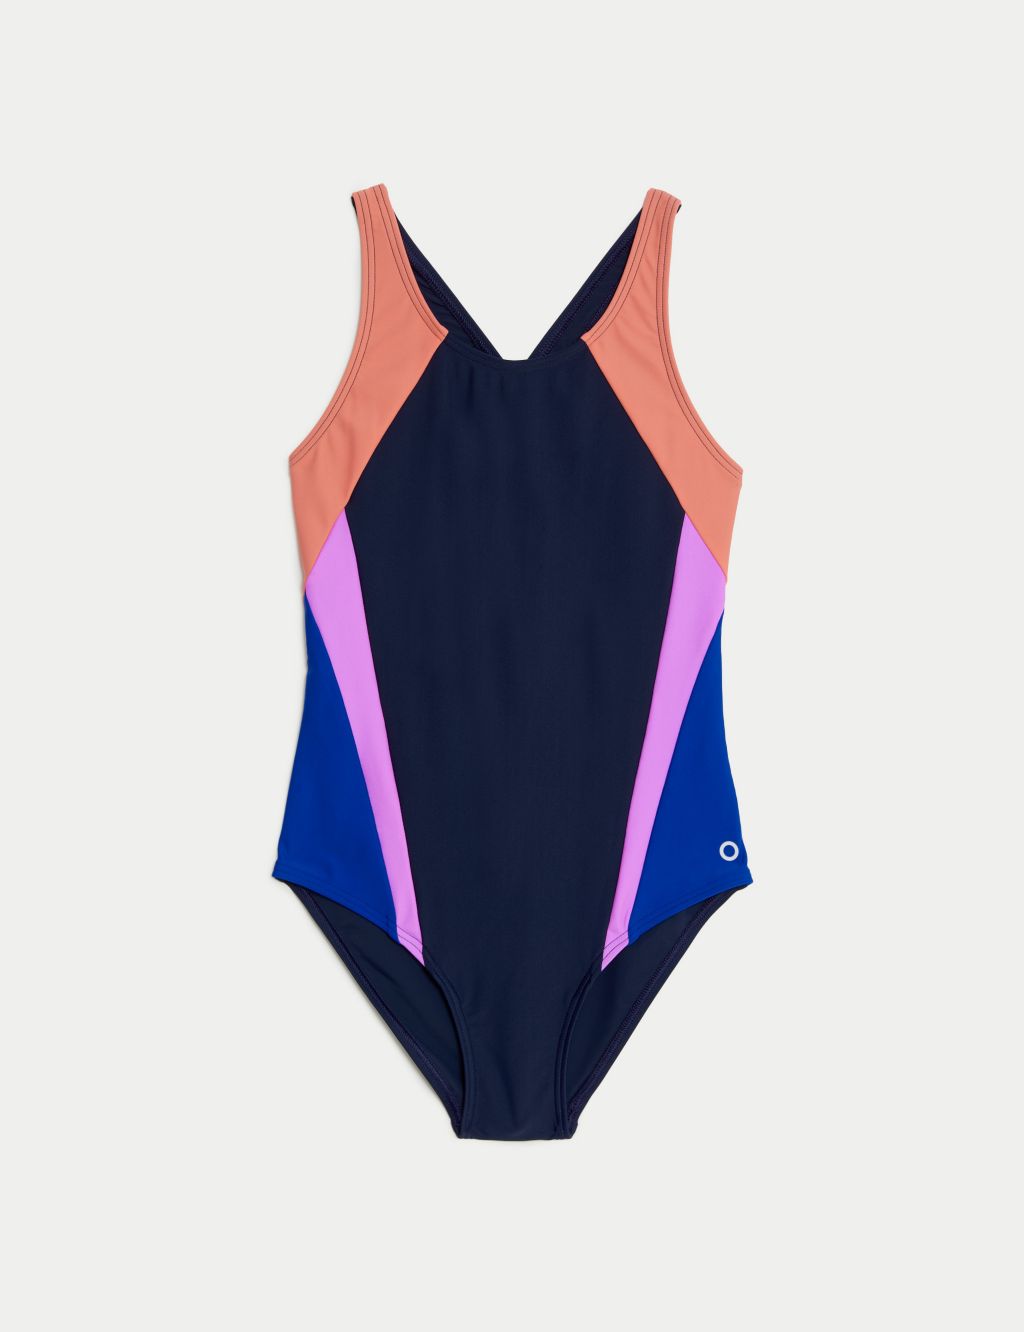 Girl's Swimsuit Size Guide – Tom & Teddy UK